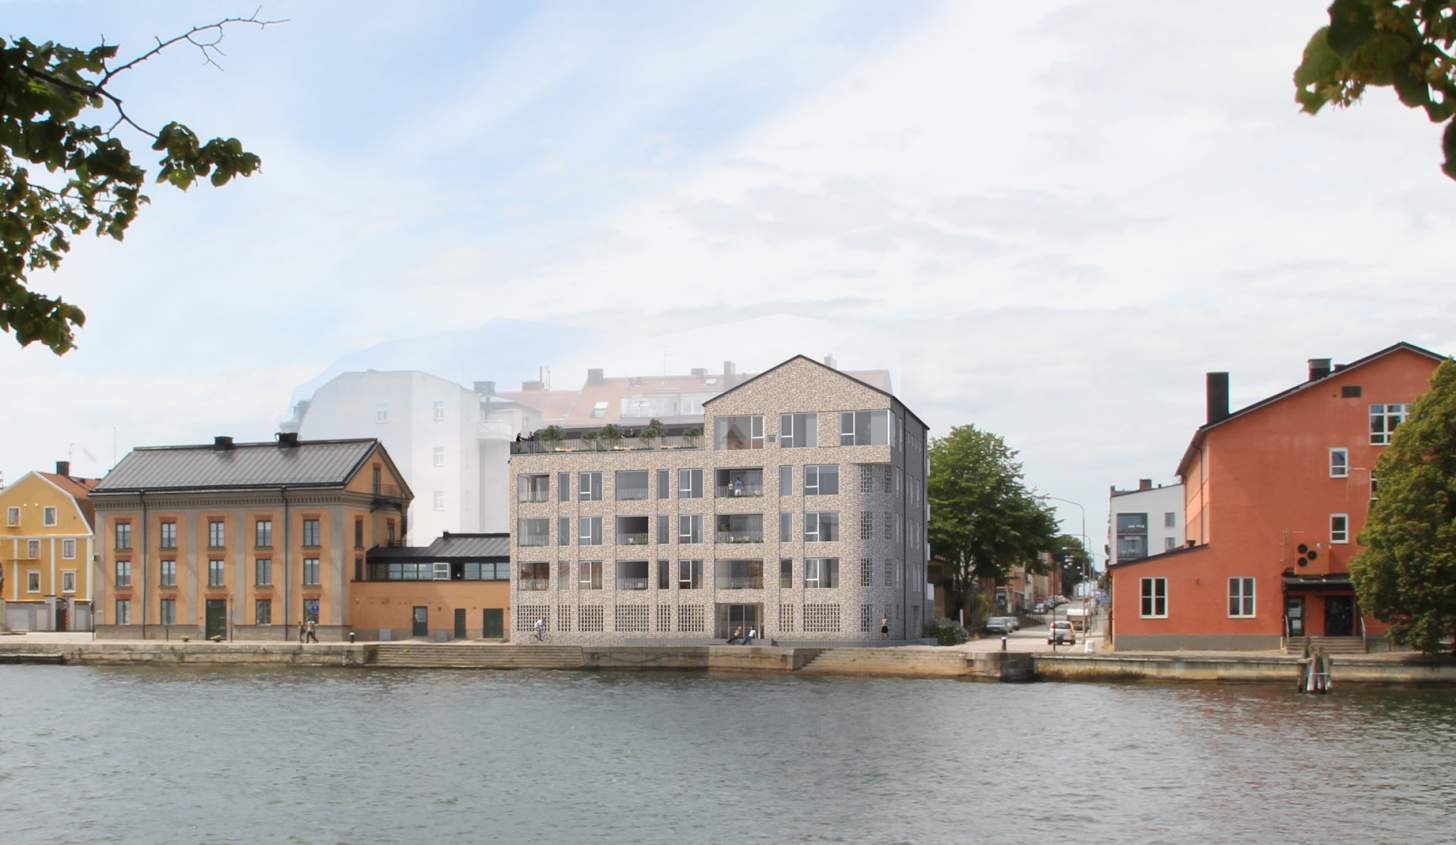 Nytt bostadshus på Kungsbron i Karlskrona 2016. Illustration Ambiocc